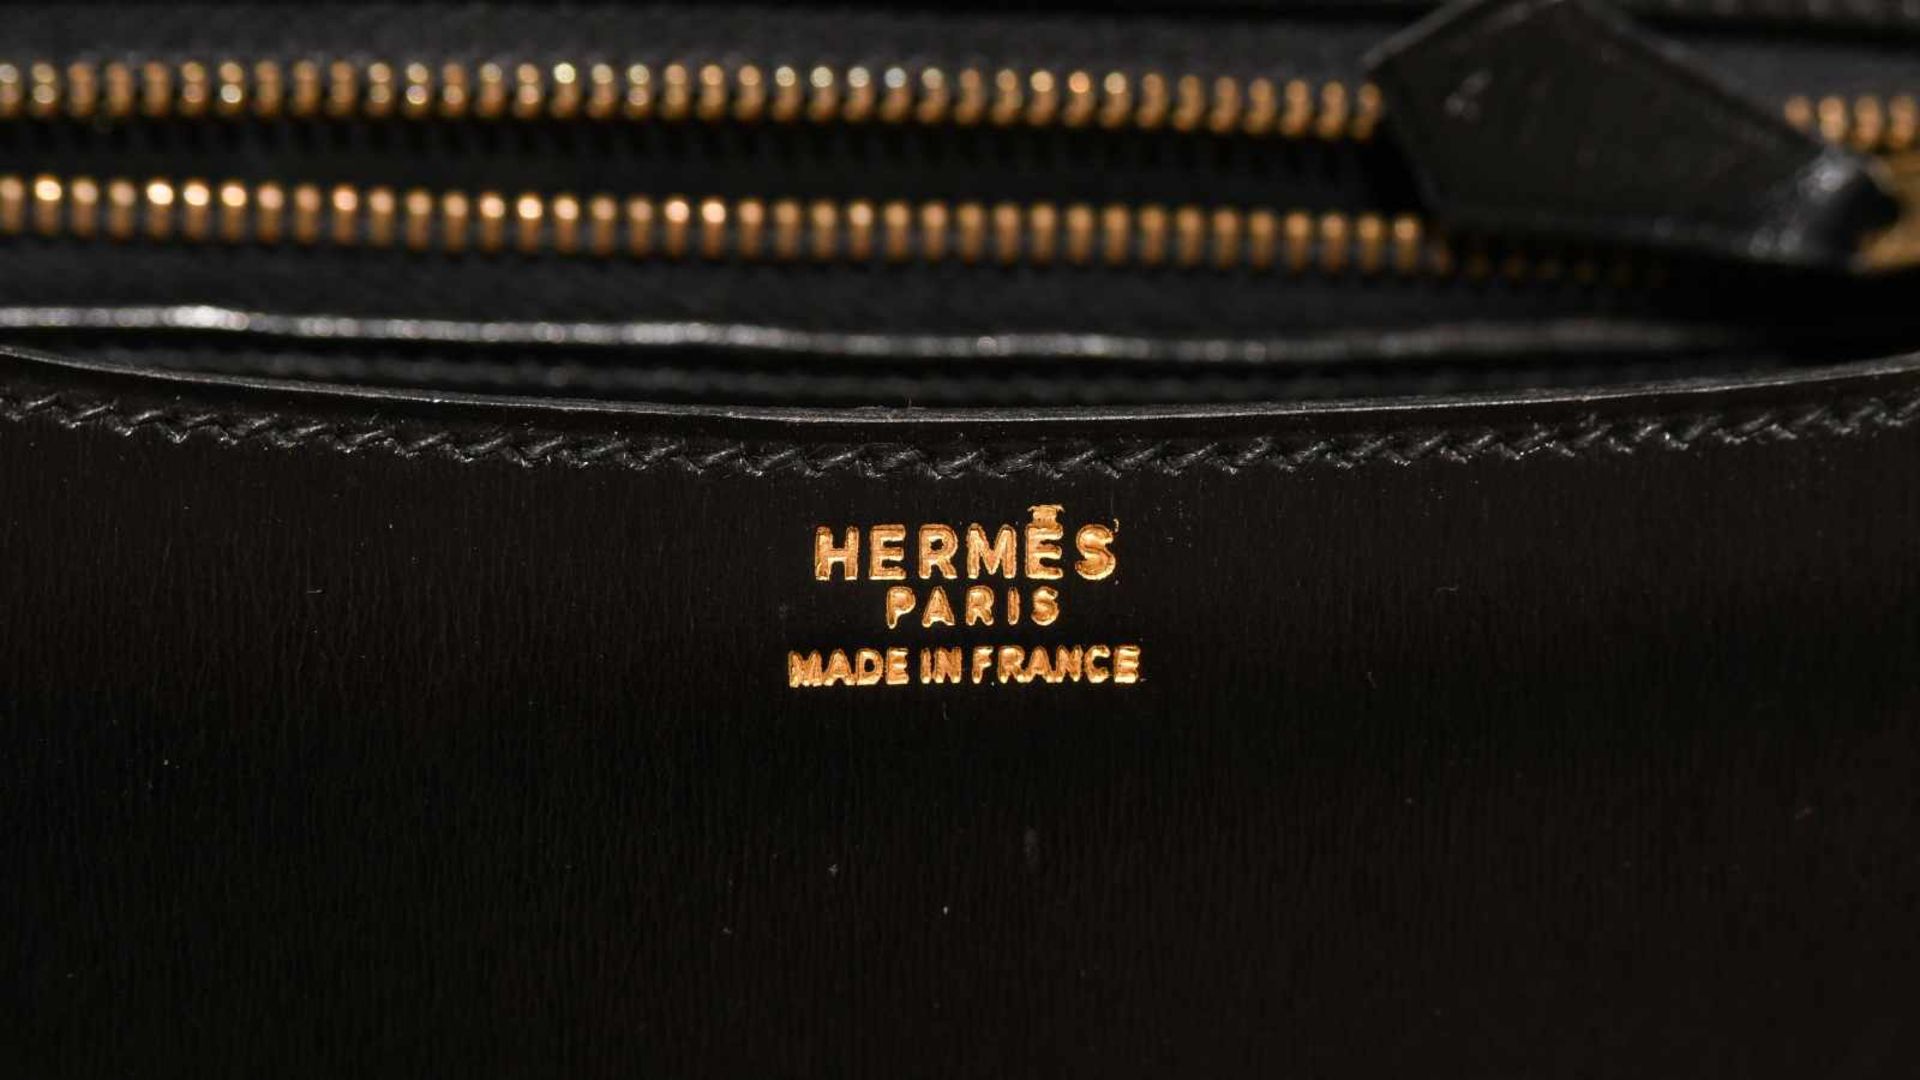 Hermès, Handtasche "Constance" Gemarkt Hermès Paris made in France. Aus schwarzem Leder. "H"- - Bild 2 aus 10